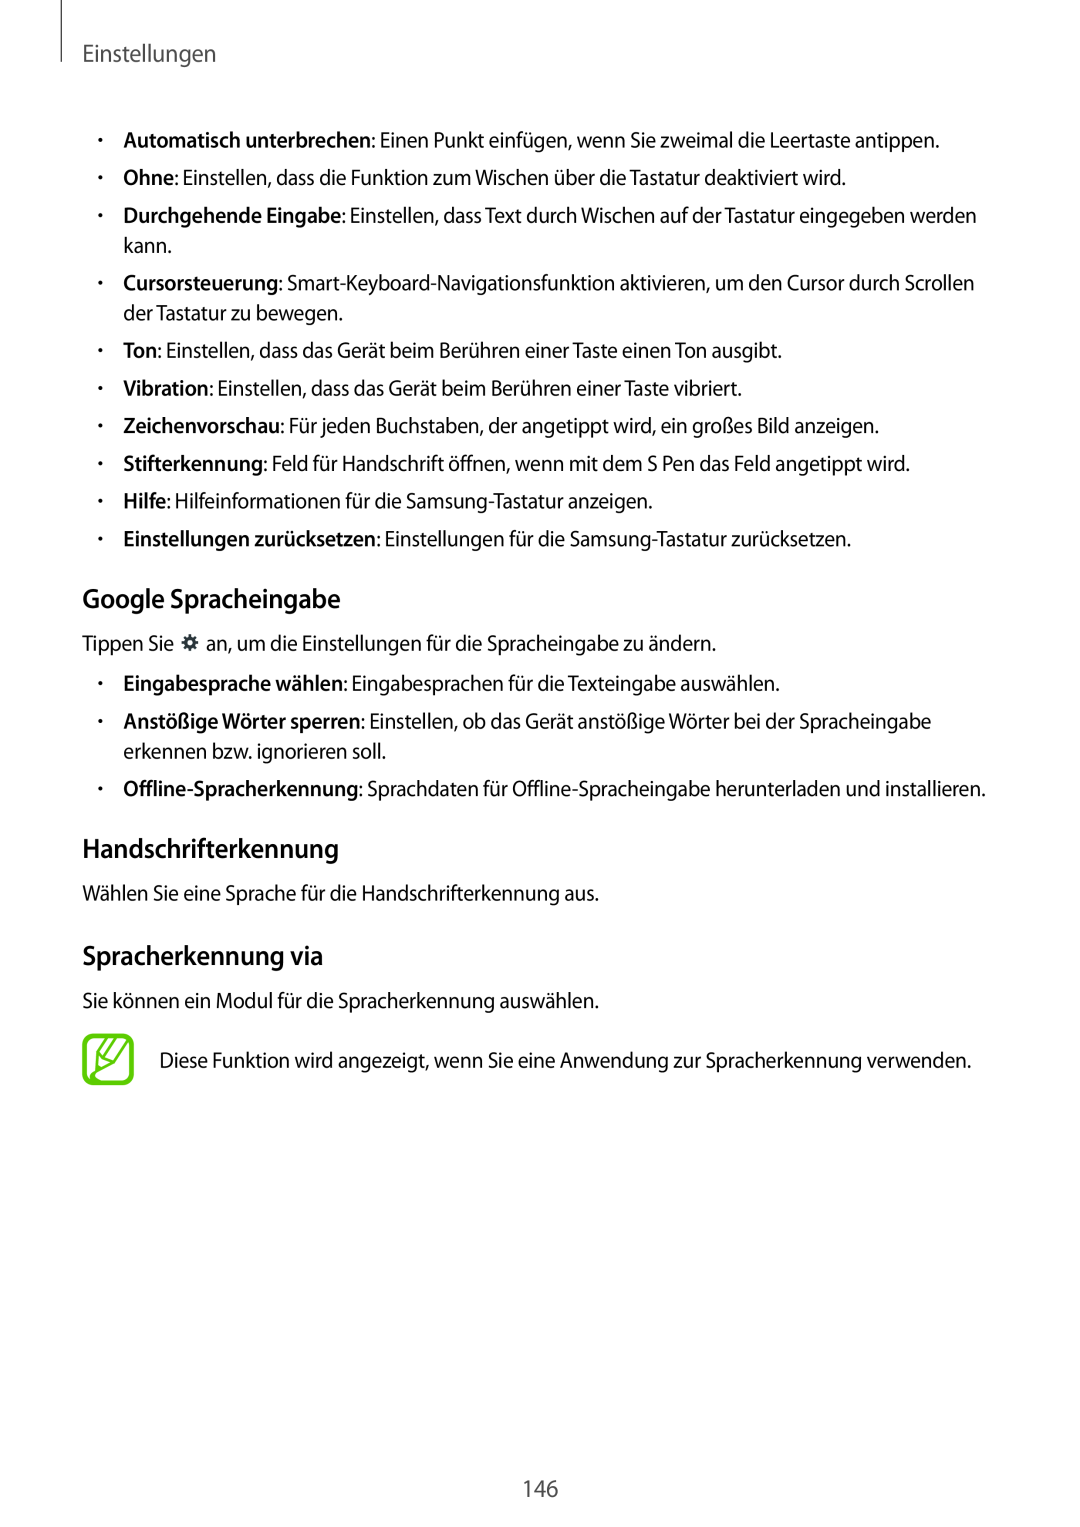 Samsung SM-P9000ZKAATO, SM-P9000ZWAATO manual Google Spracheingabe, Handschrifterkennung, Spracherkennung via, Einstellungen 